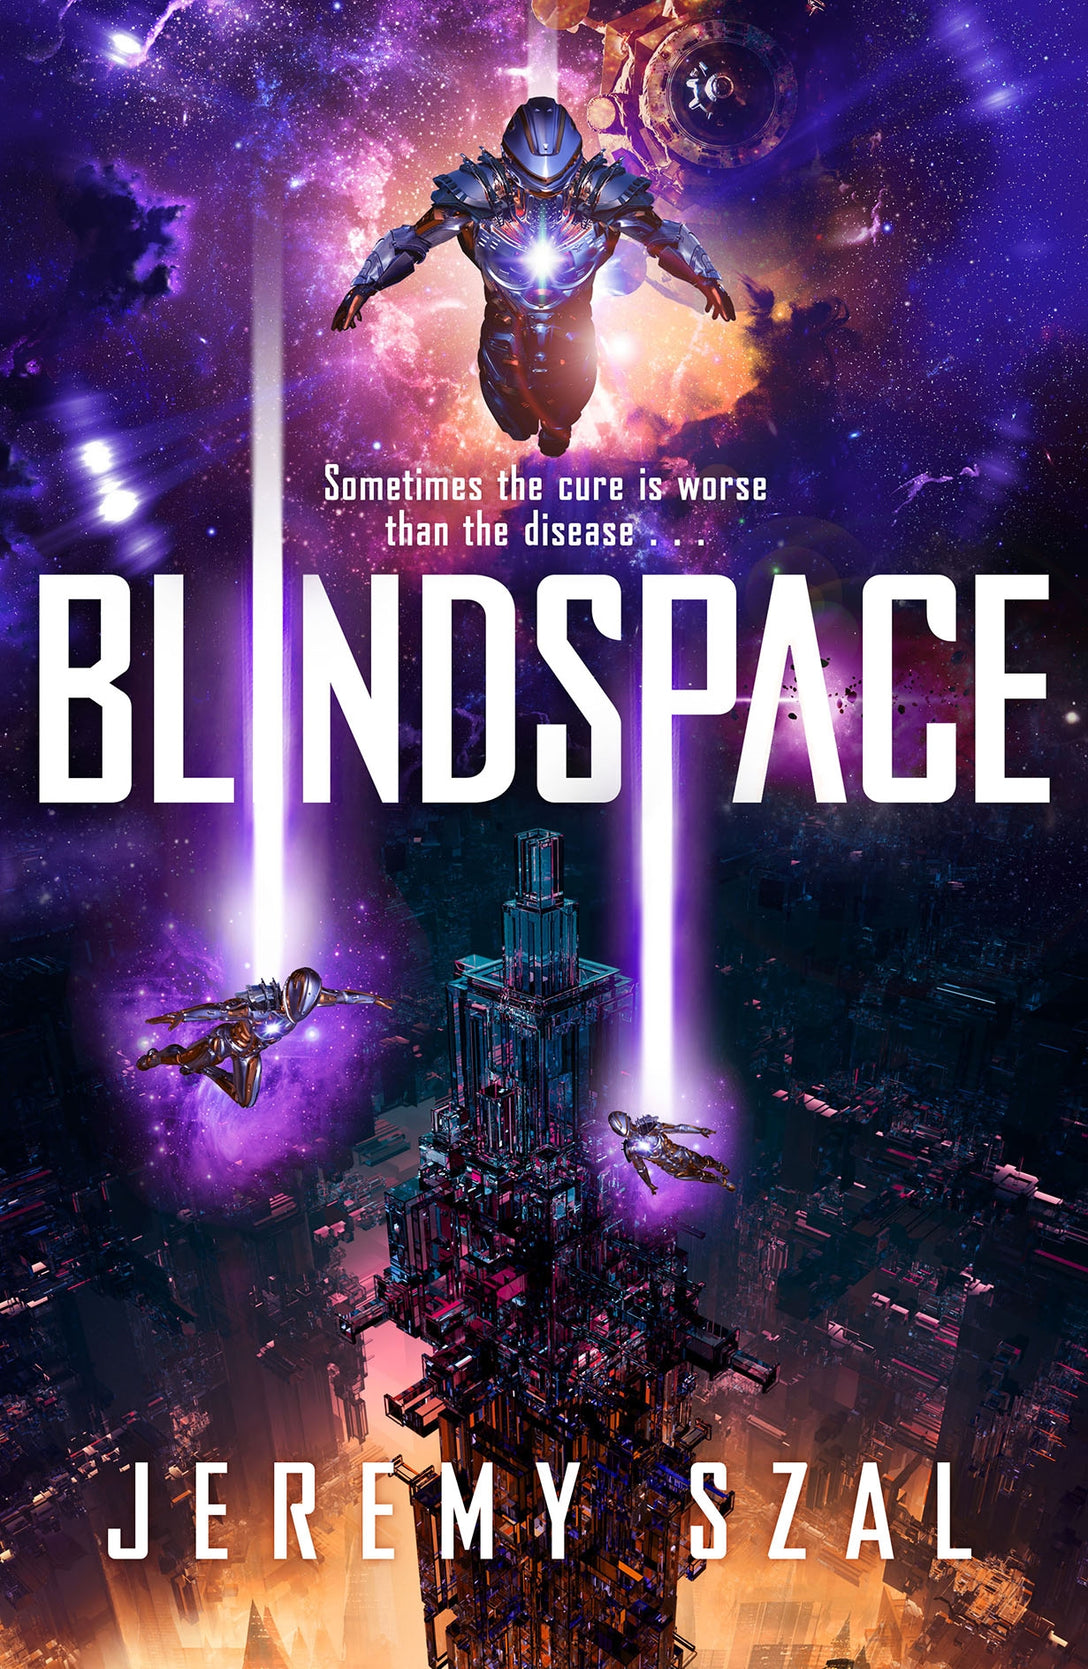 Blindspace by Jeremy Szal